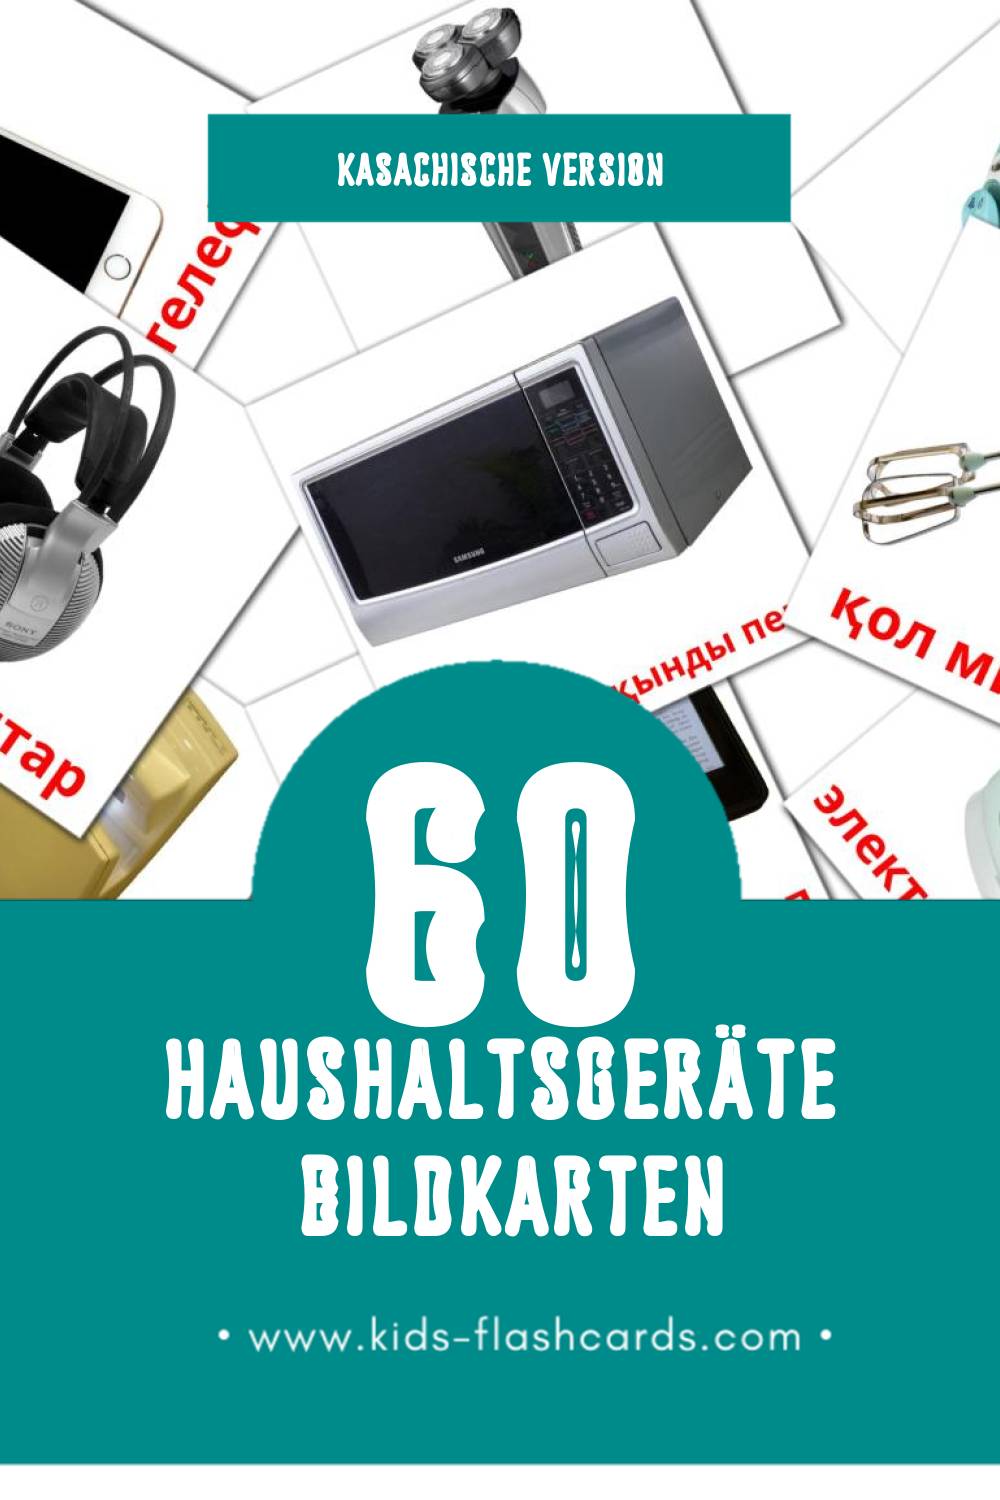 Visual Тұрмыстық техникалар жабдығы Flashcards für Kleinkinder (60 Karten in Kasachisch)